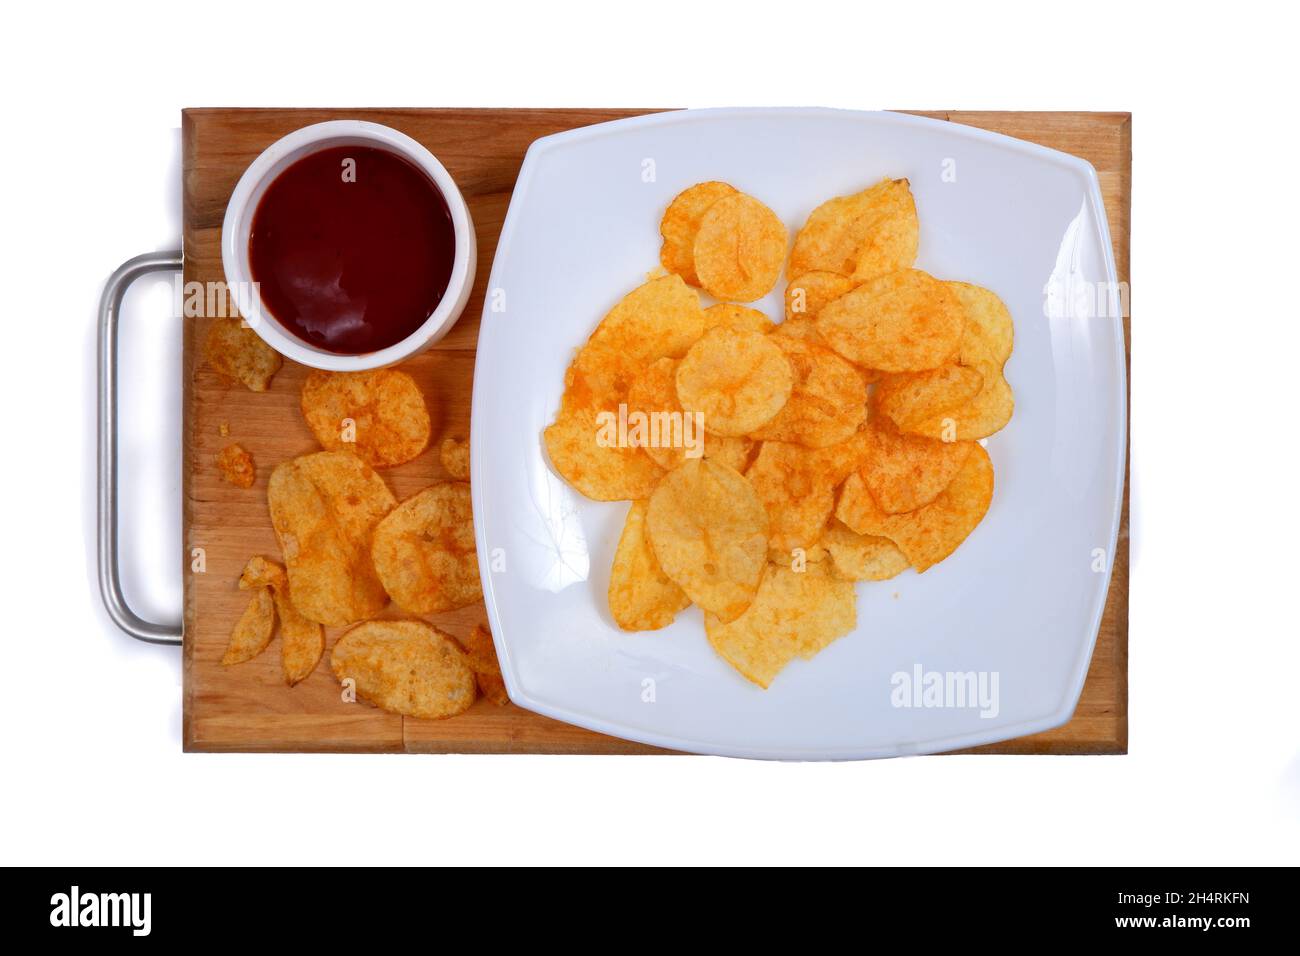 les chips de pomme de terre se trouvent sur une plaque blanche avec ketchup, isolée sur un fond blanc Banque D'Images